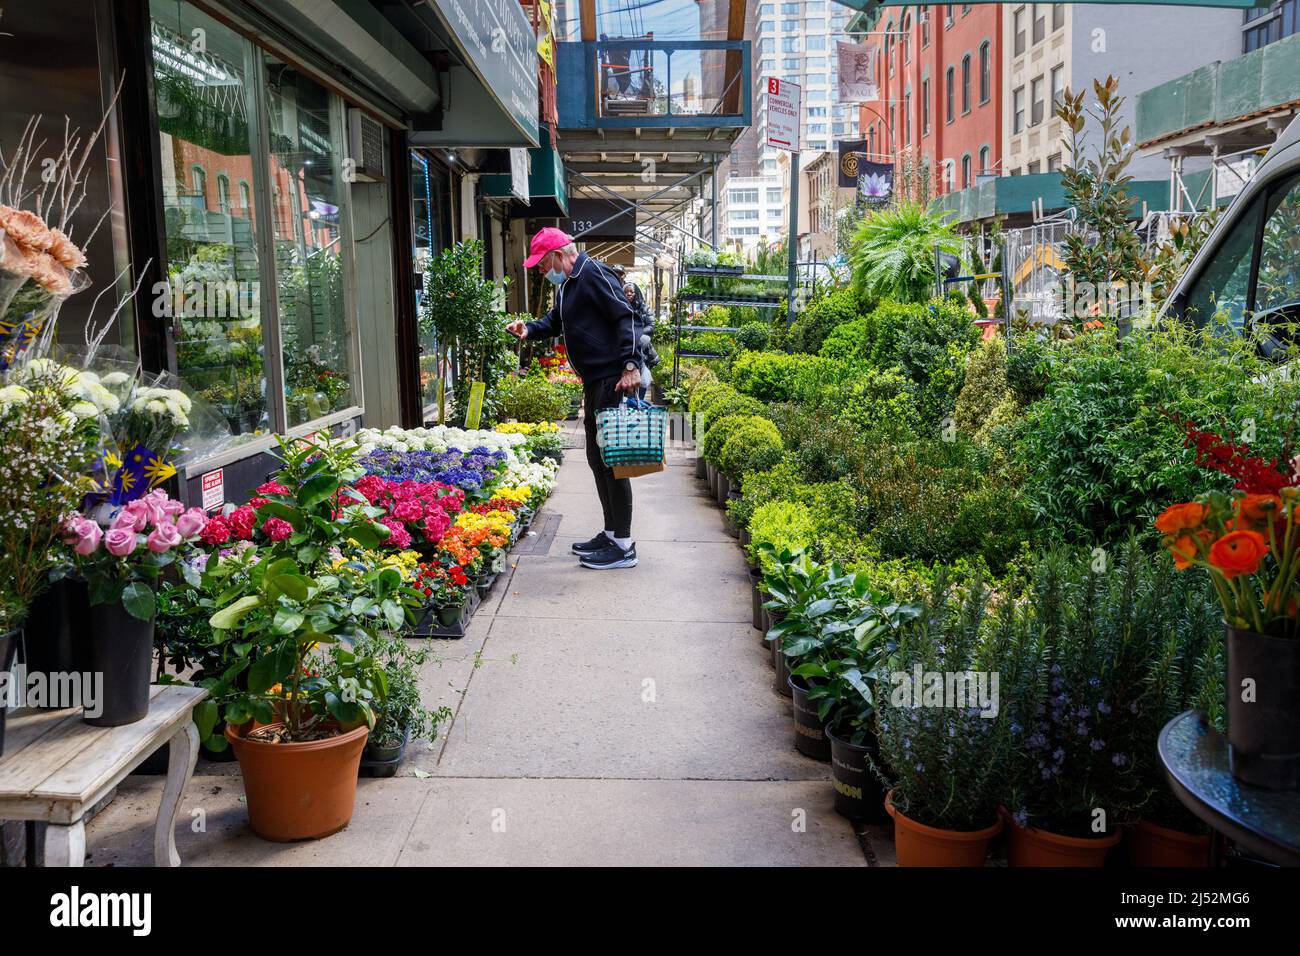 Acera escénica en el Distrito de las Flores, 28th Street, Manhattan, Nueva York, NY, EE.UU. Foto de stock